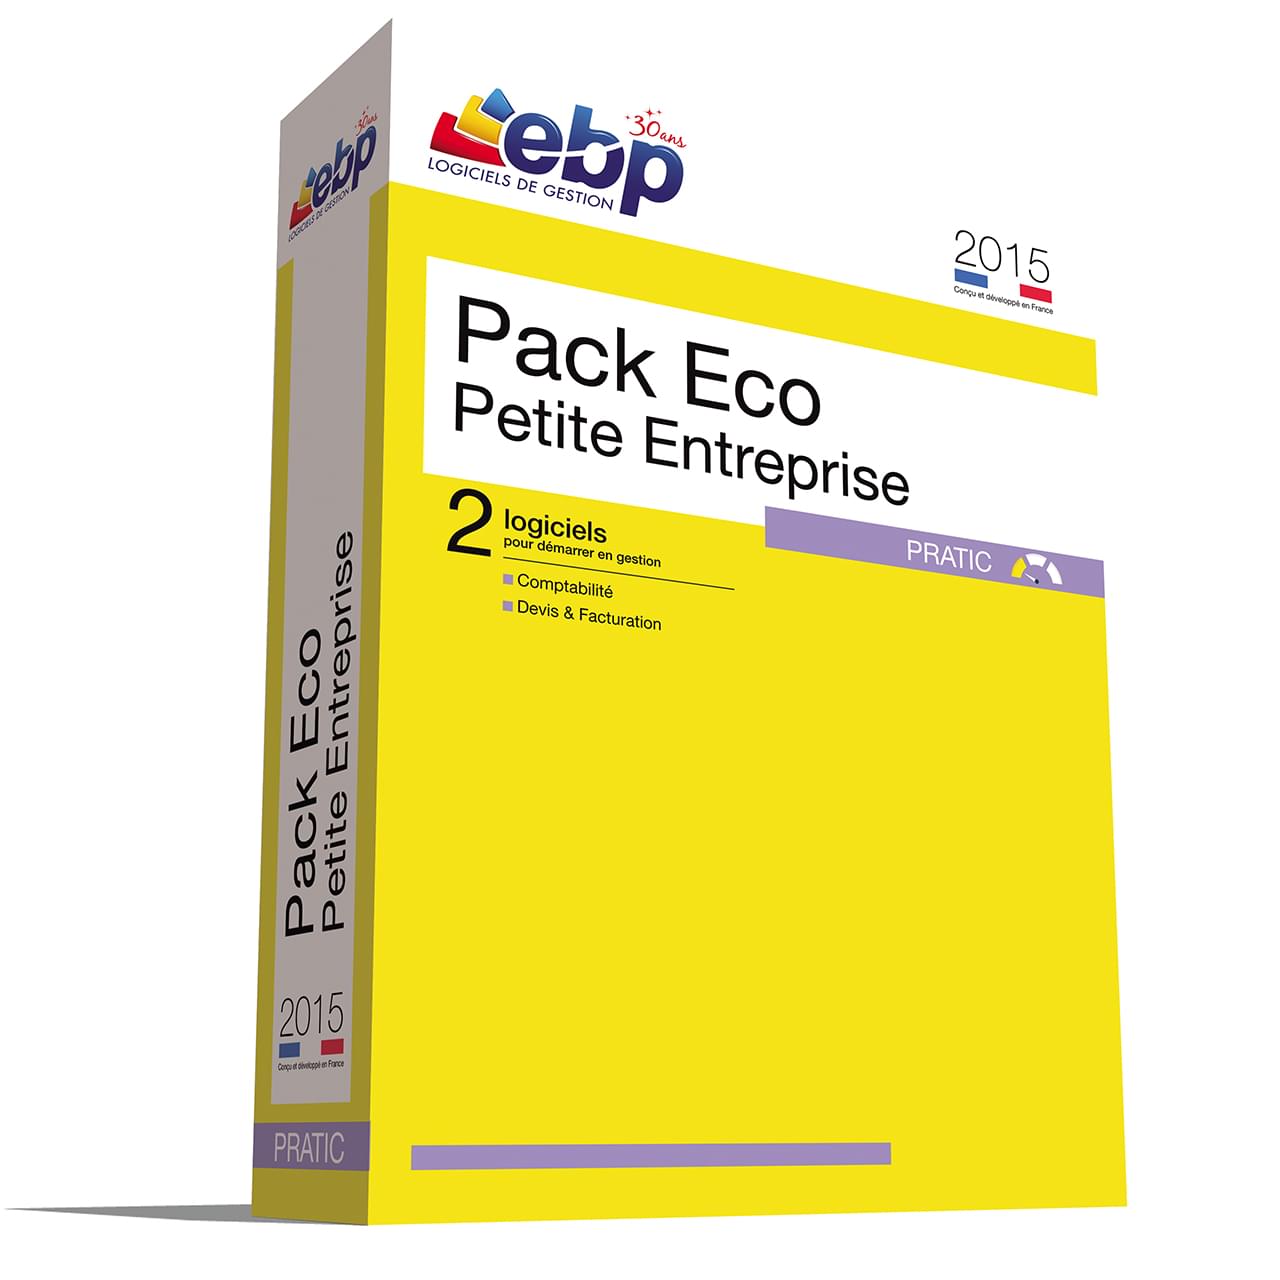 Logiciel application EBP Pack Eco Petite Entreprise Pratic 2015